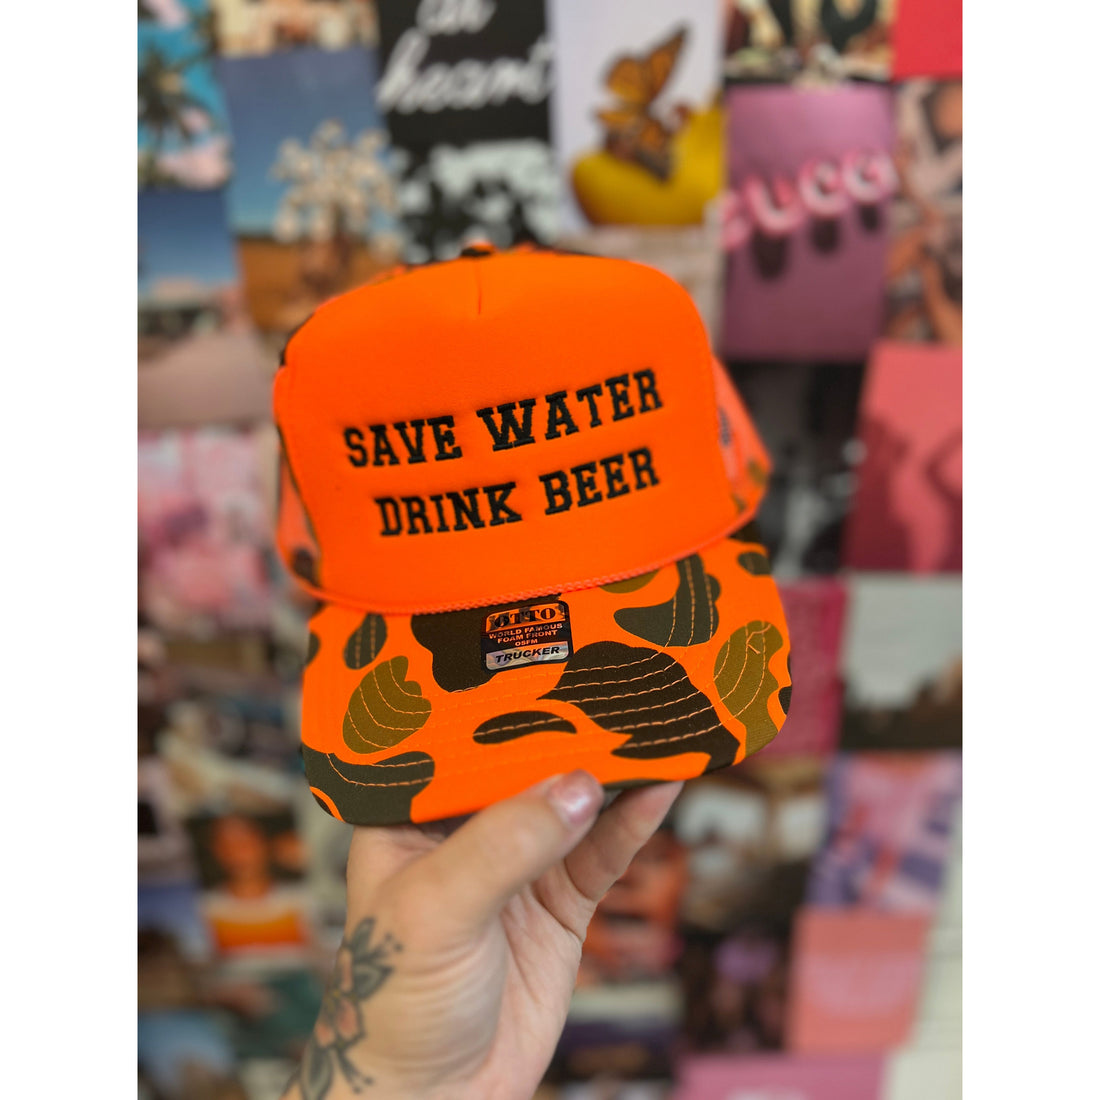 Save Water Drink Beer Trucker Hat